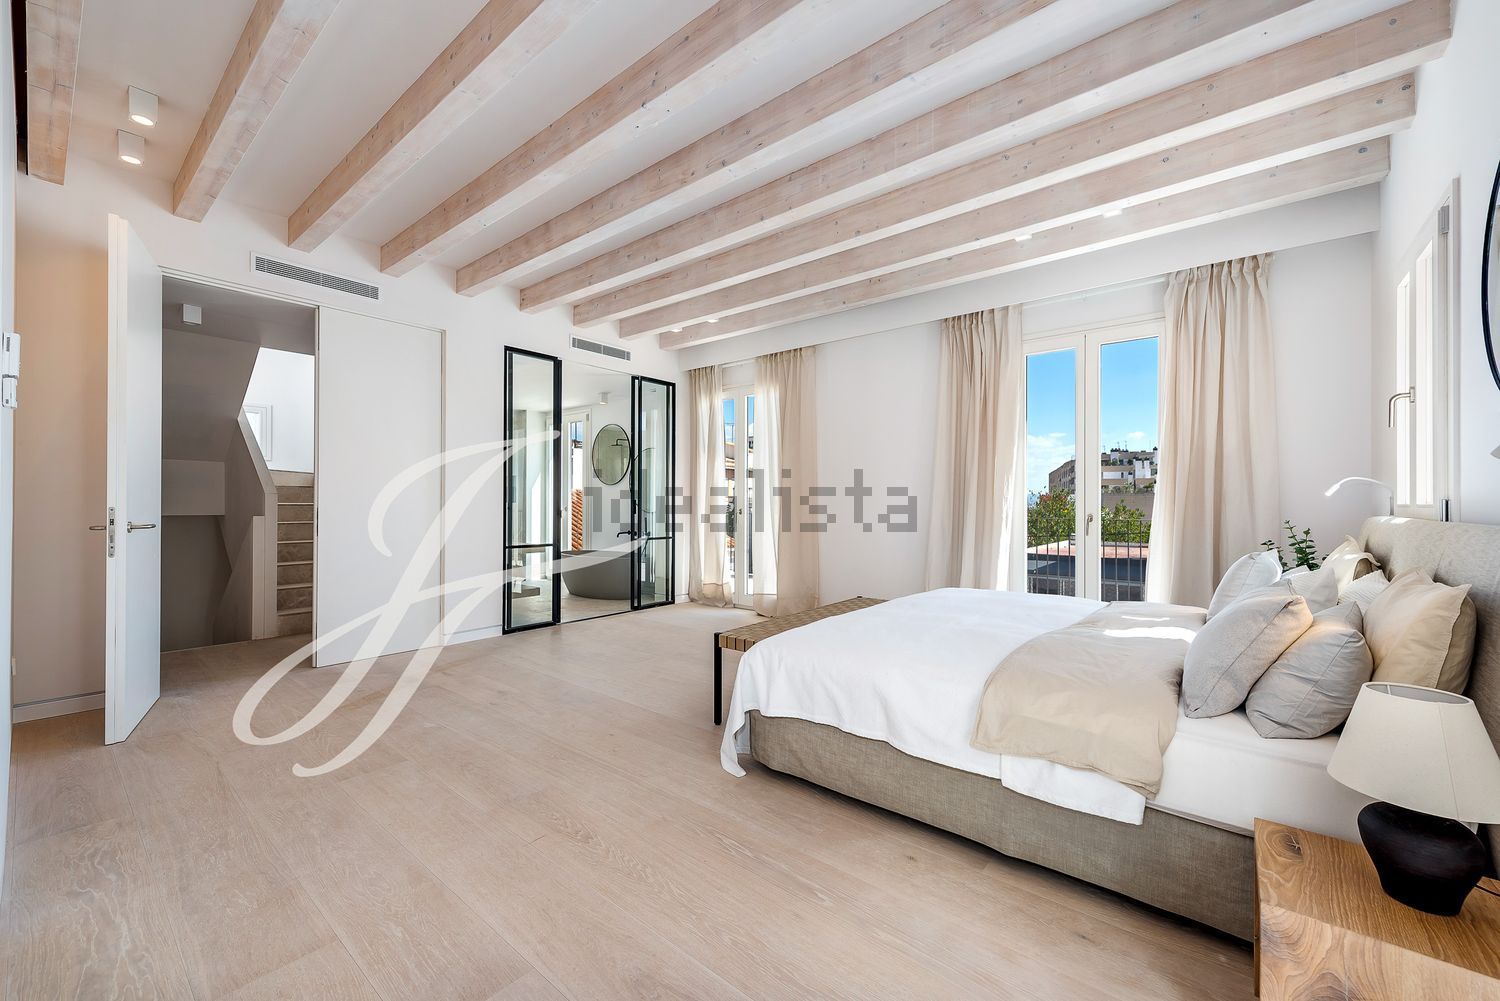 FOTOS: Sale a la venta por 3,5 milllones la casa de Palma en la que vivió Santiago Rusiñol